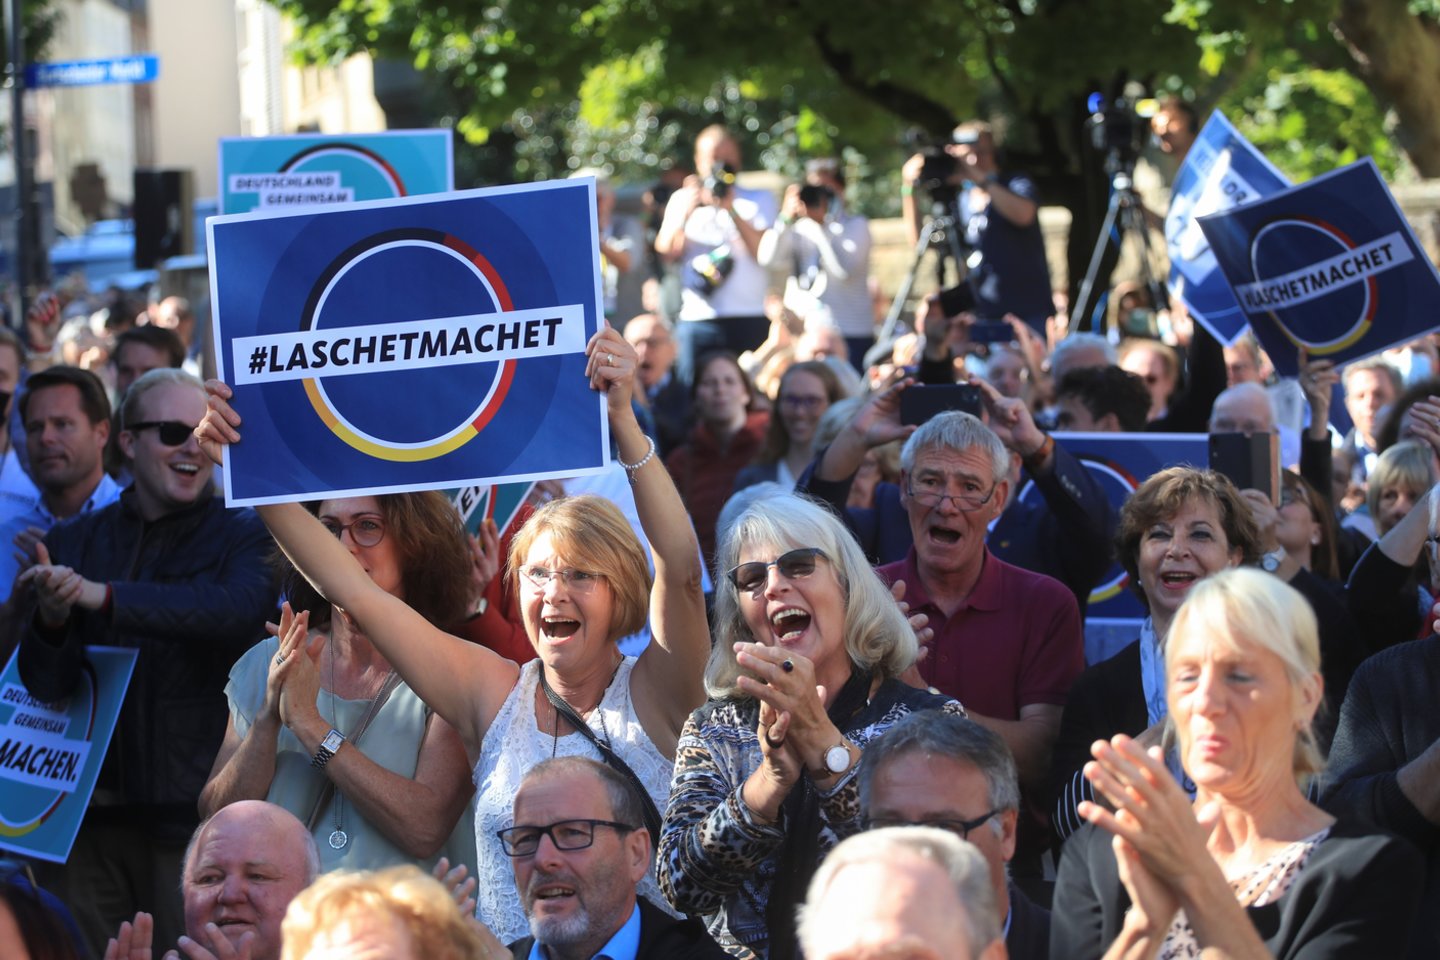  Vokietijos parlamentas bus išrinktas pagal painią mišrią sistemą.  <br> Reuters/Scanpix nuotr.